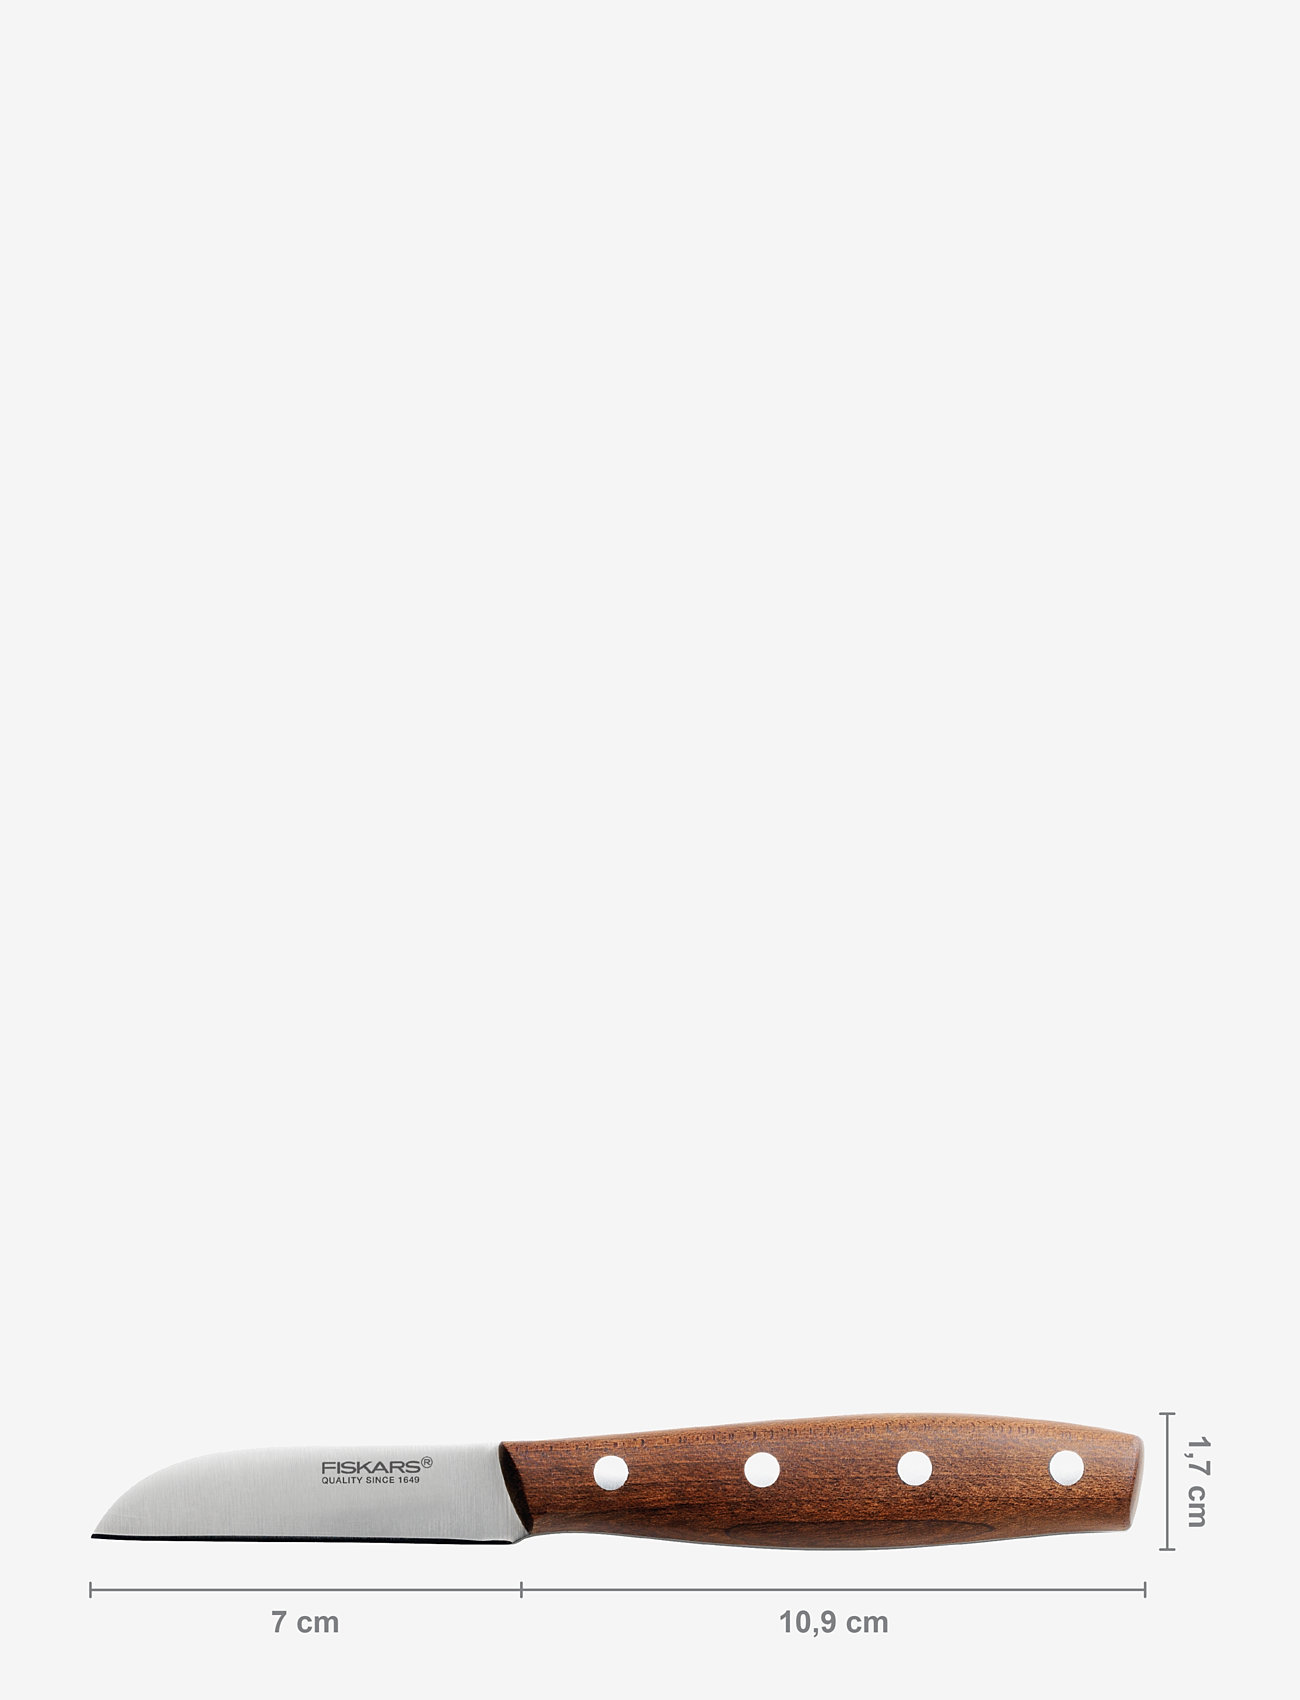 Fiskars - North peel knife 7 cm - die niedrigsten preise - brown - 1